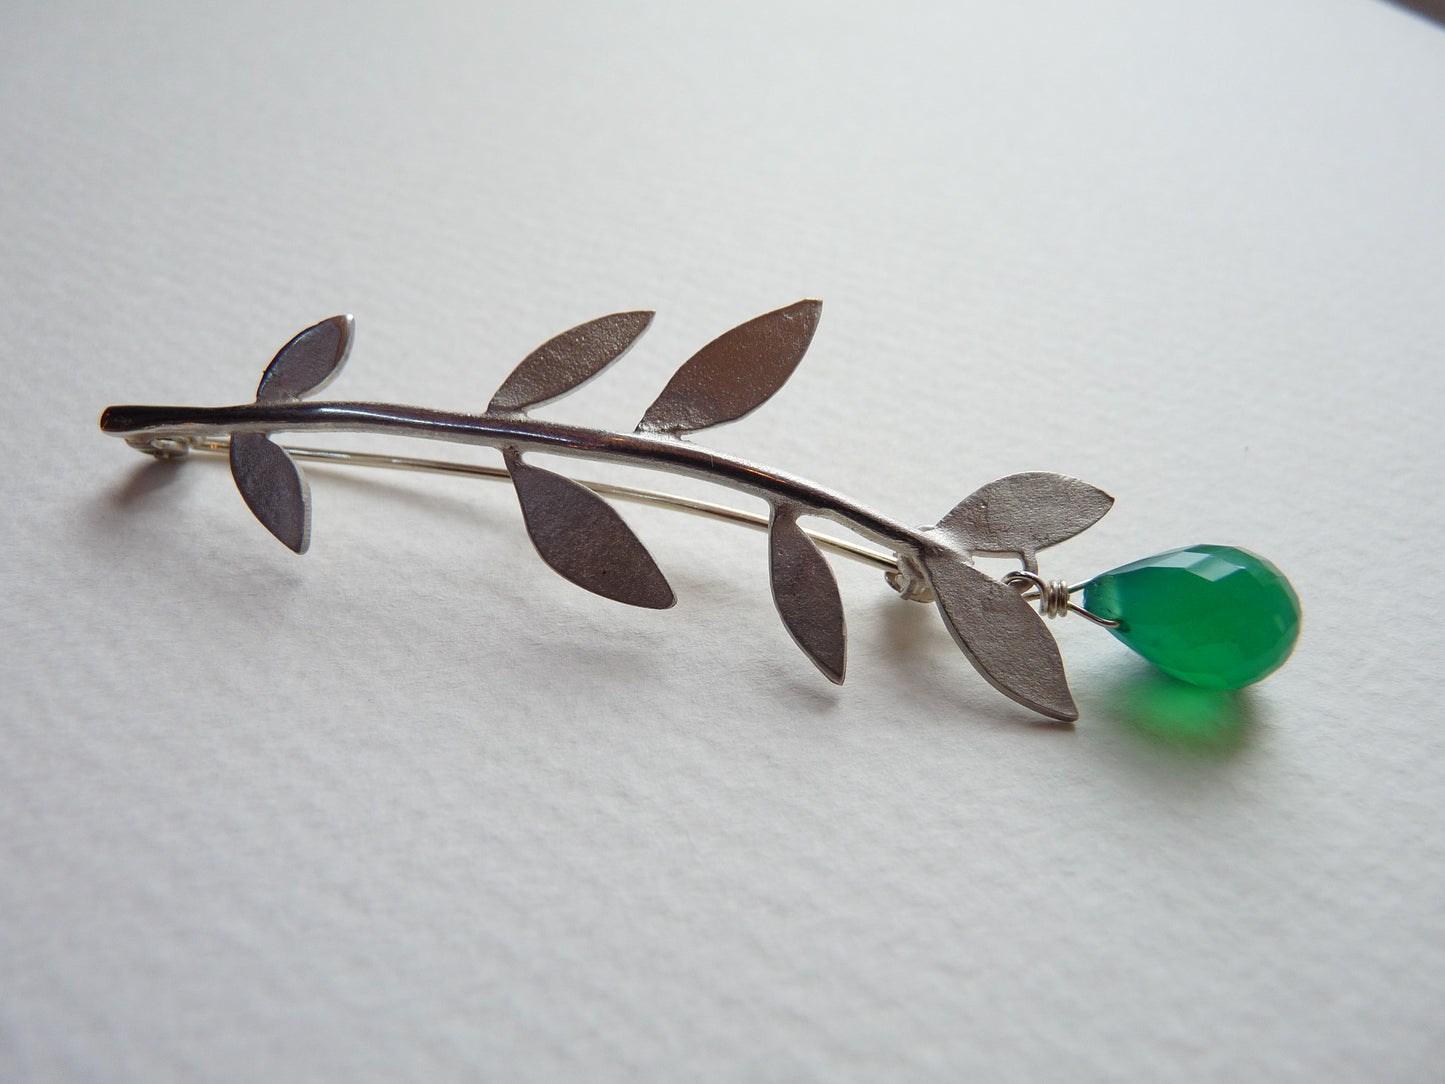 Minty Leaf Brooch With Gemstone